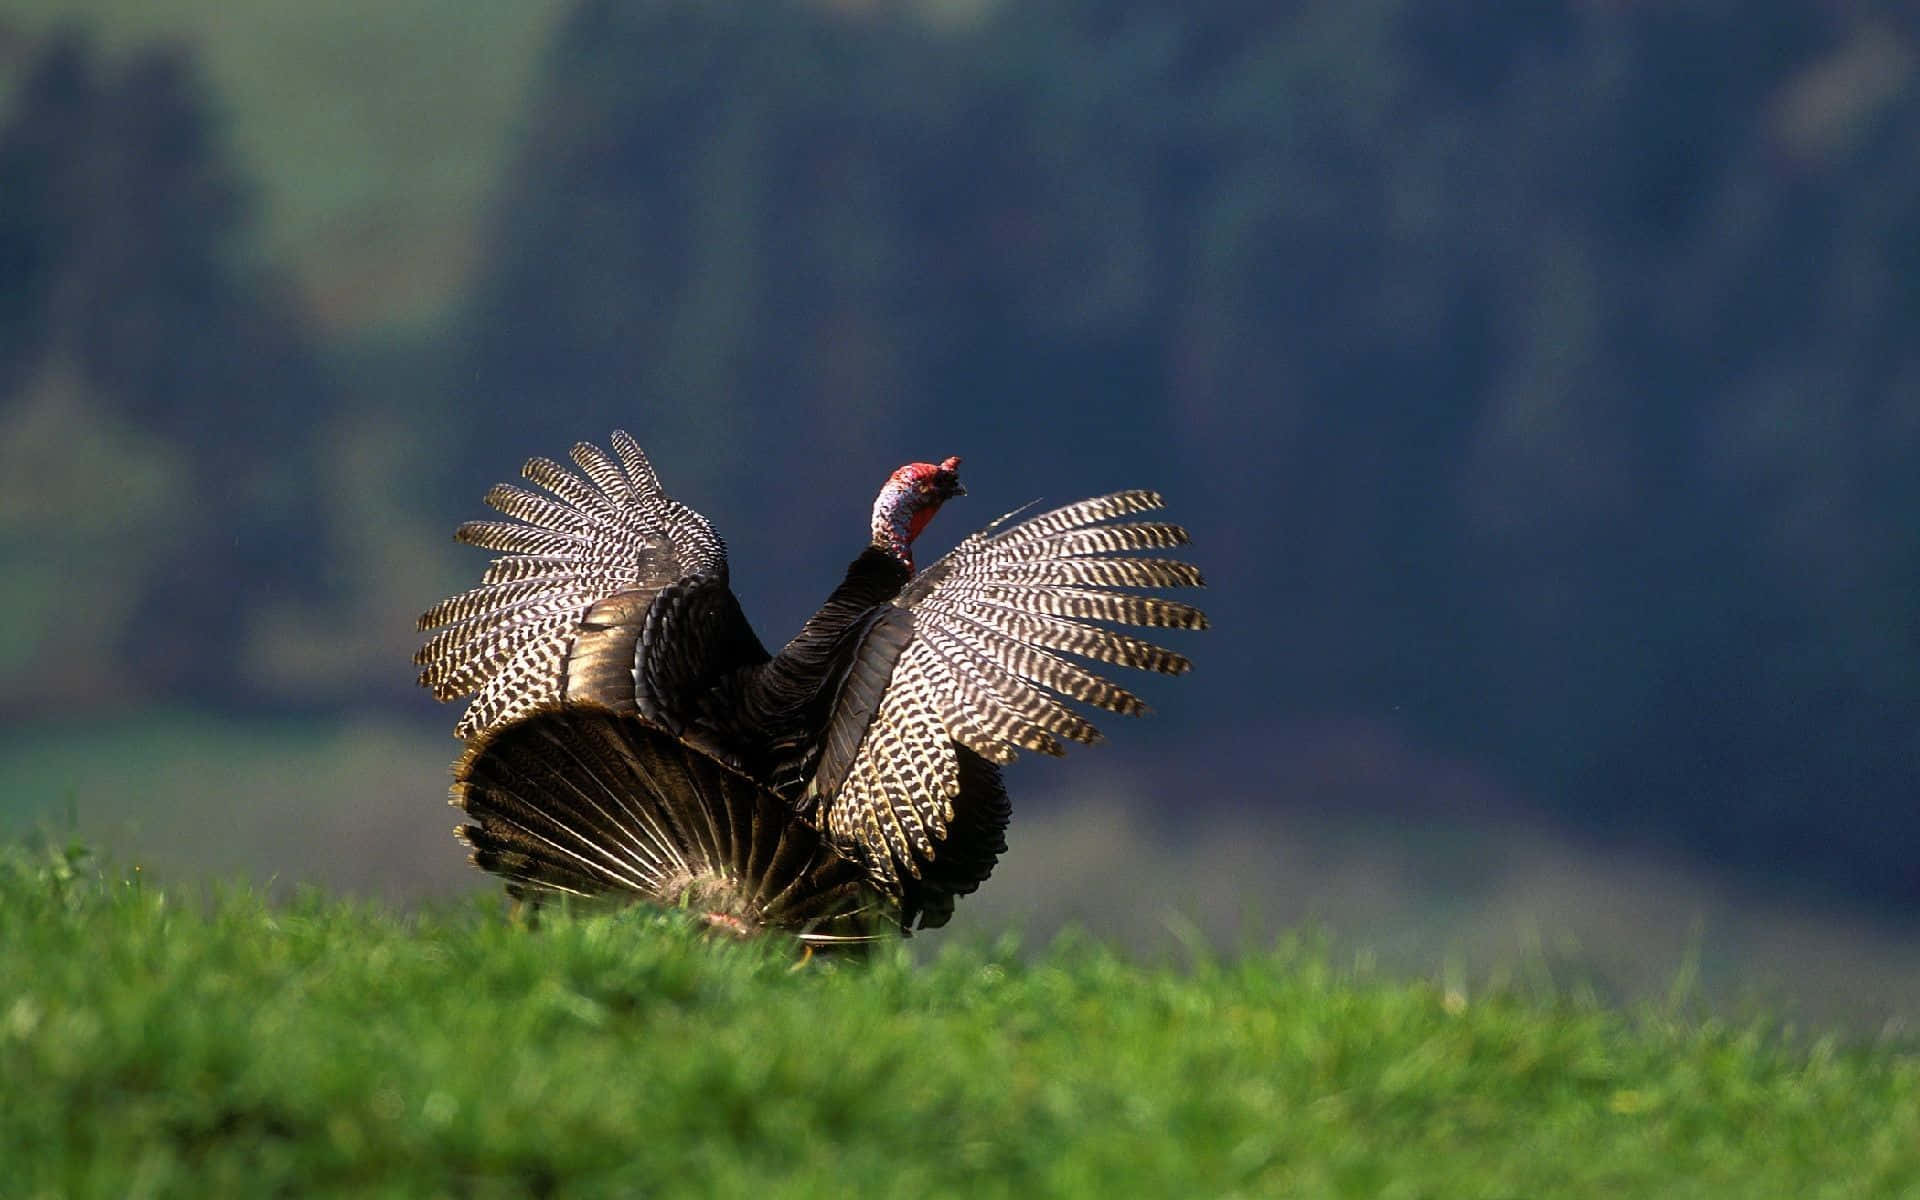 "Majestic Wild Turkey In Its Natural Habitat"